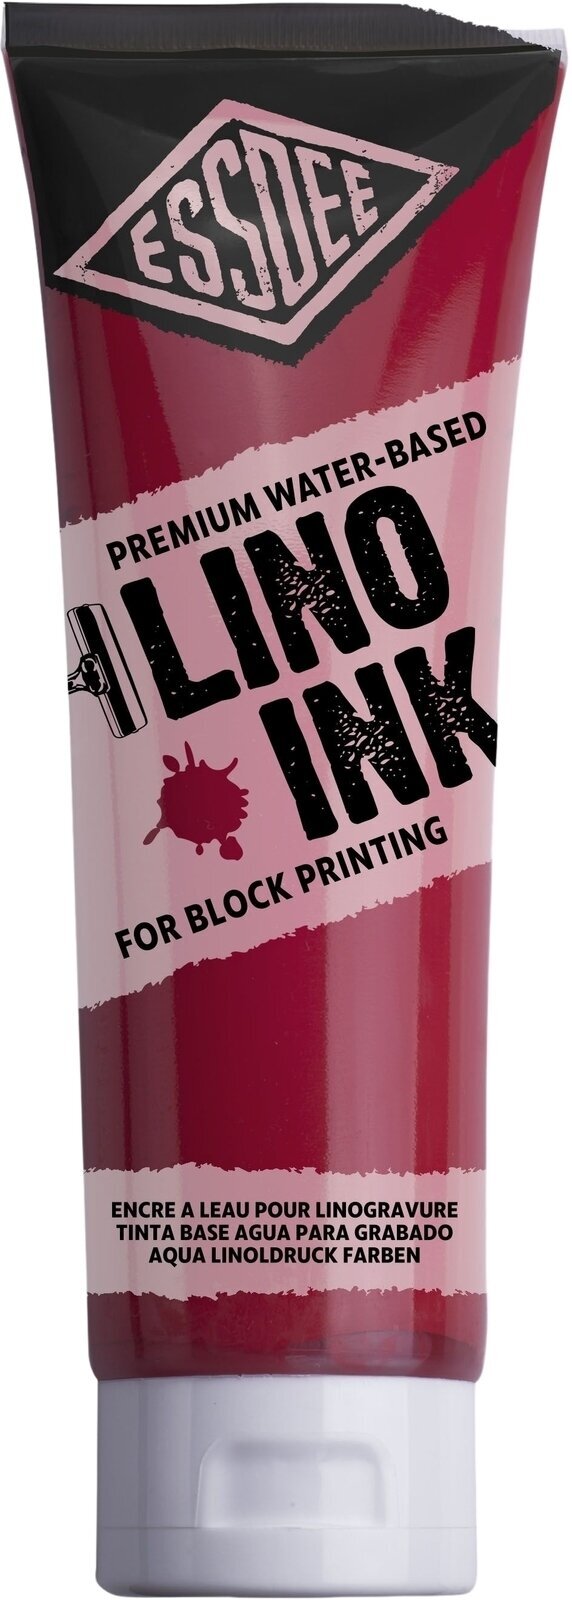 Verf voor linosnede Essdee Block Printing Ink Verf voor linosnede Brilliant Red (Scarlet) 300 ml